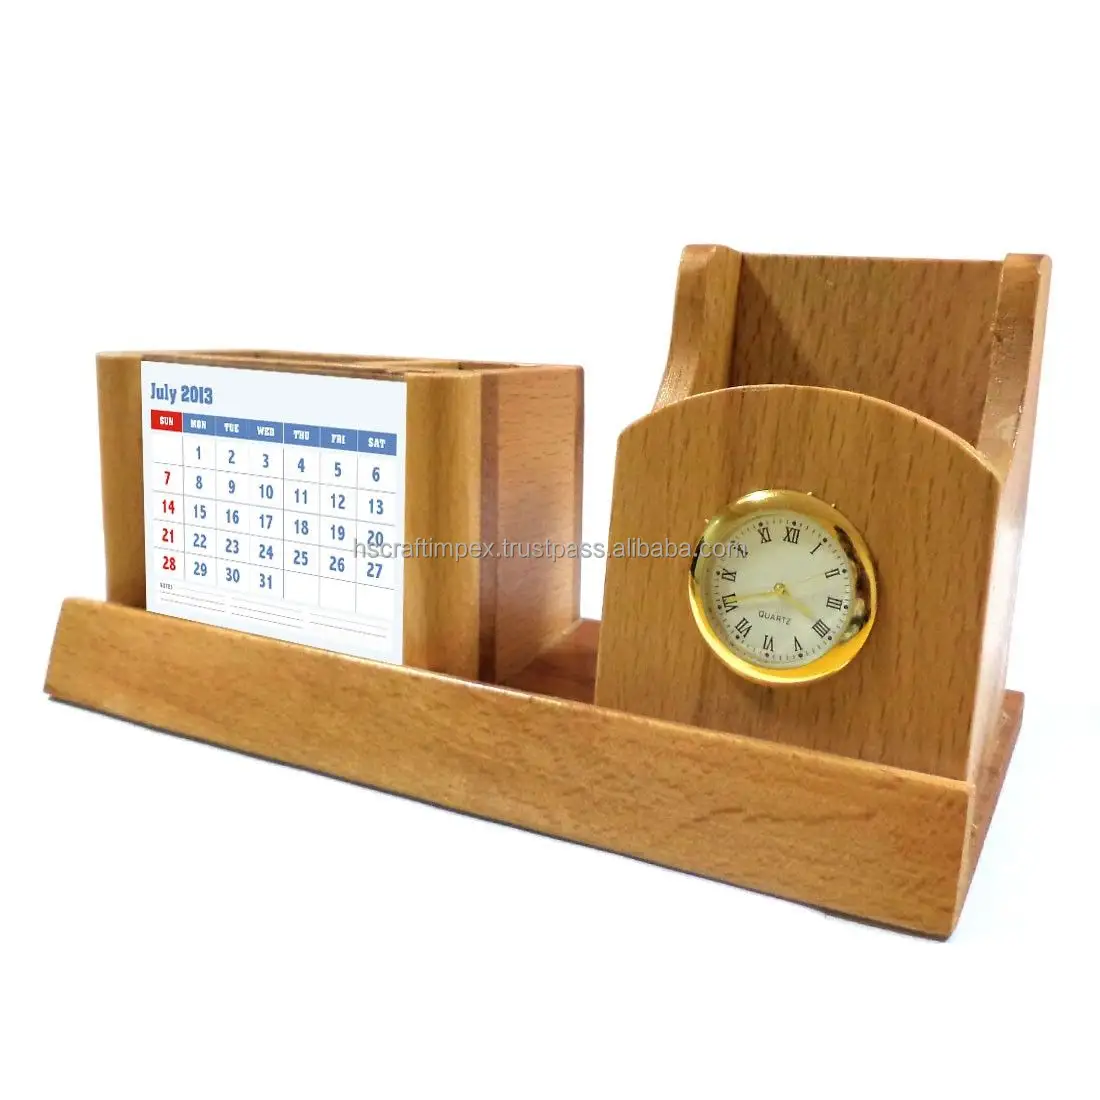 عالية الجودة رخيصة الثمن أفضل dwsign طاولة خشبية حامل قلم مع ساعة و حامل نتيجة التقويم طاولة مكتبية ديكور.